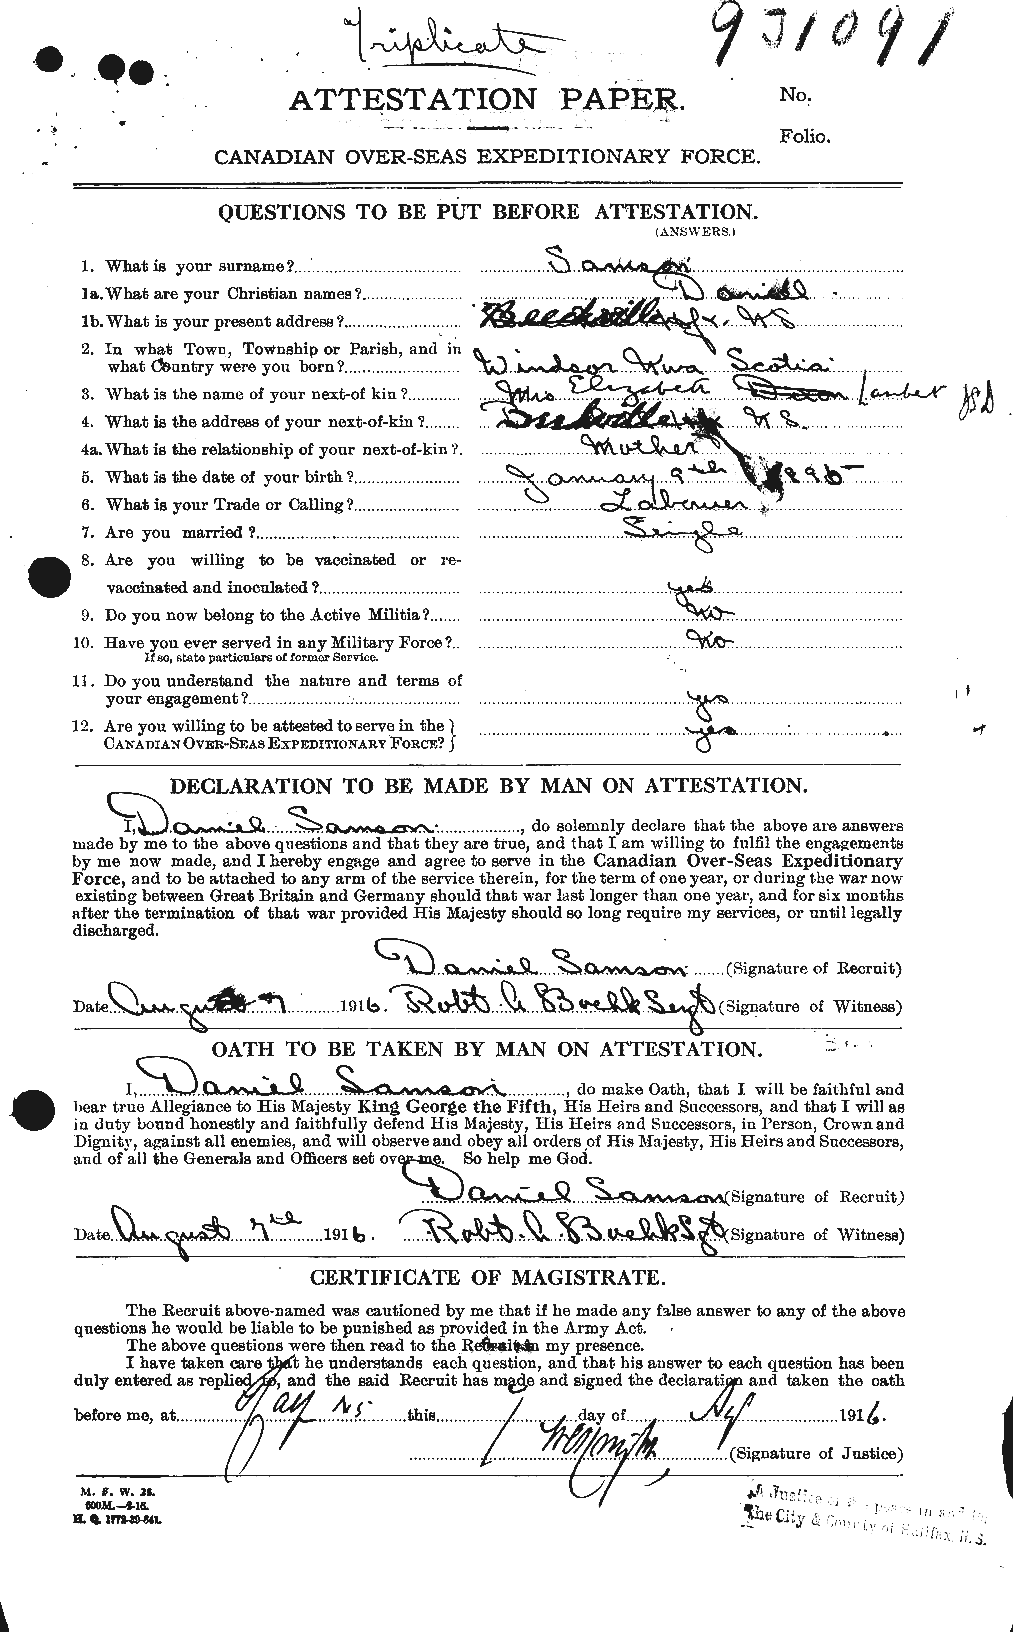 Dossiers du Personnel de la Première Guerre mondiale - CEC 619644a